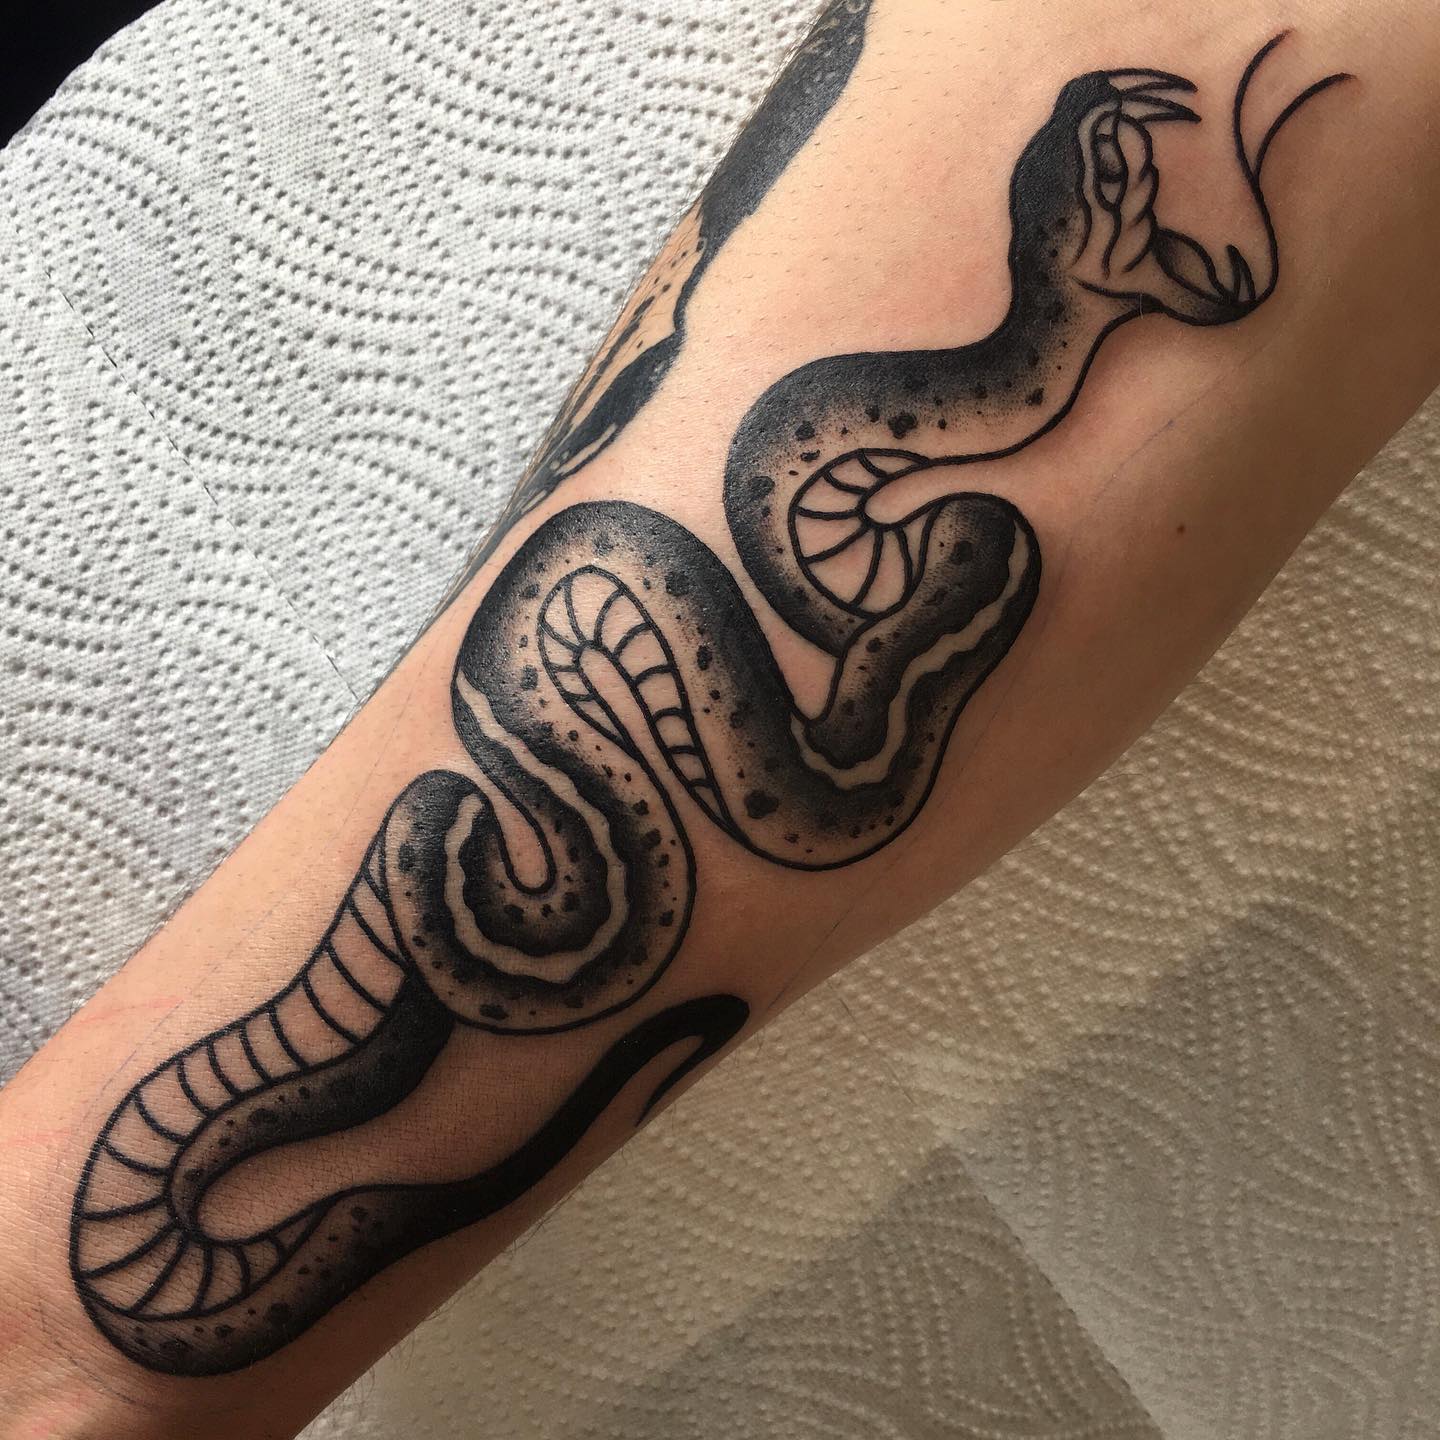 BLACK SNAKE…
#snake #snaketattoo #tattoo #tattoos #tattooed #tattoolife #tattooi